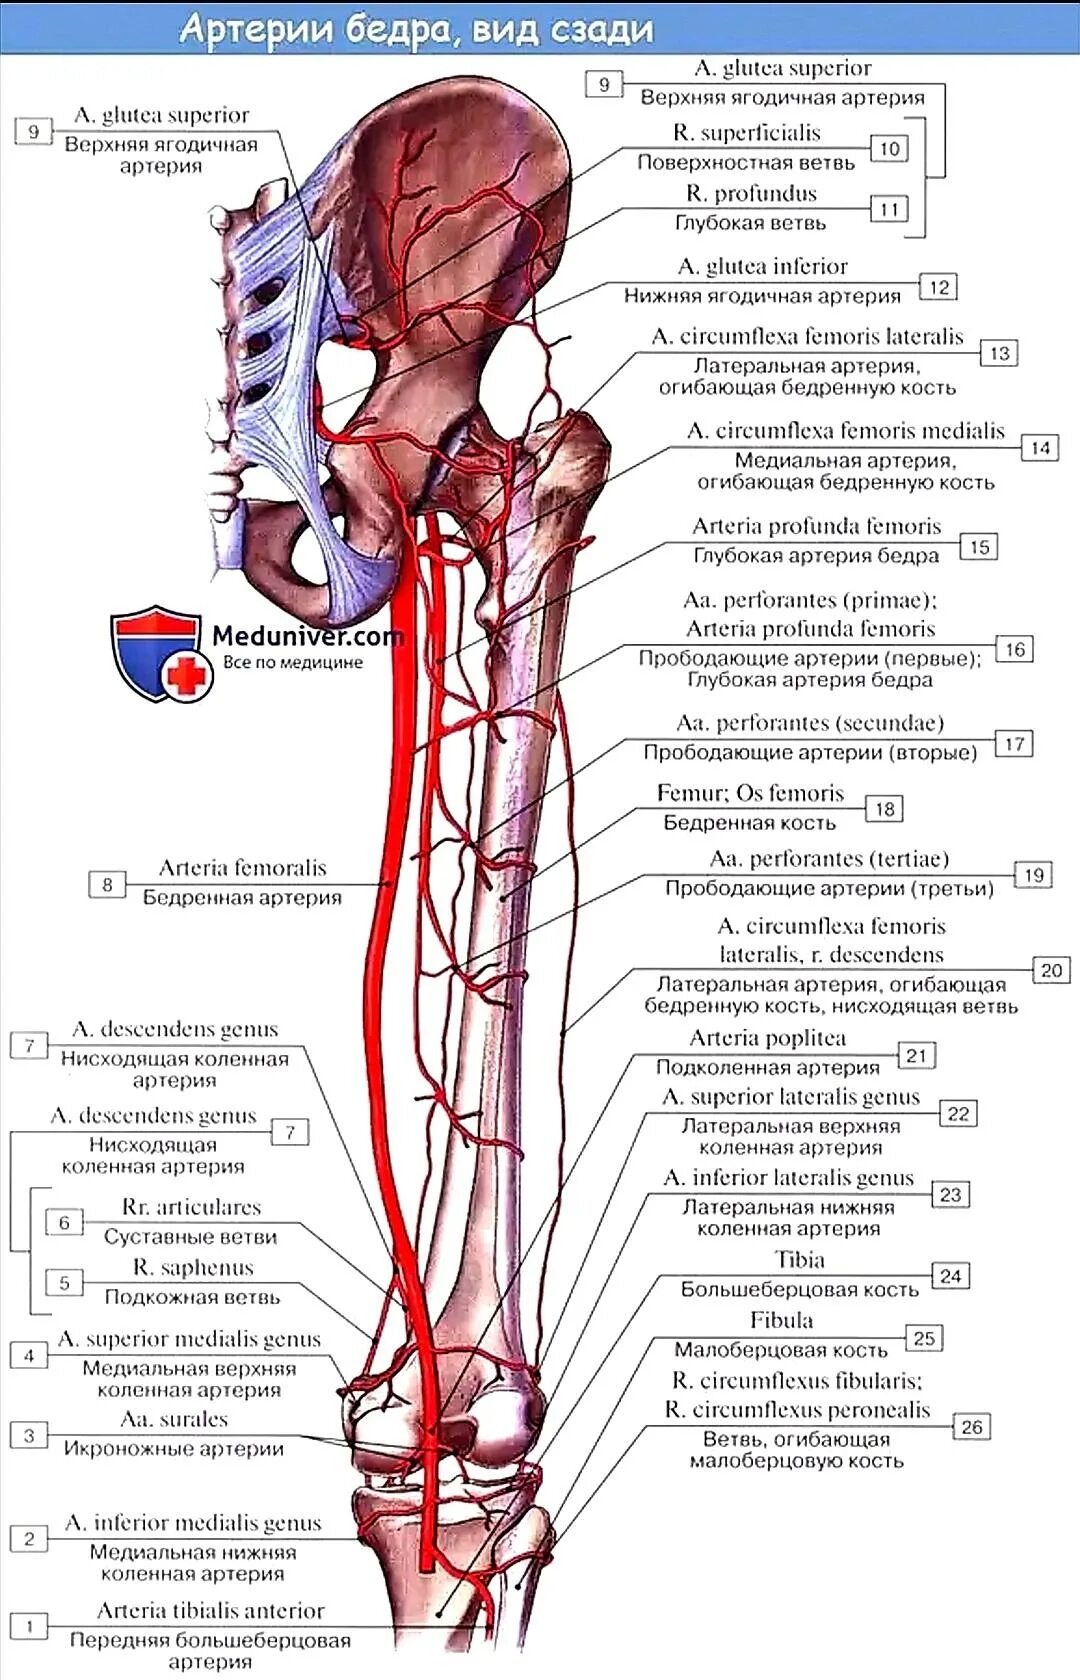 Аорты нижних конечностей. Ветви медиальной артерии огибающей бедренную кость. Артерия огибающая бедренную кость. Прободающие артерии бедра. Медиальная артерия огибающая бедренную кость.